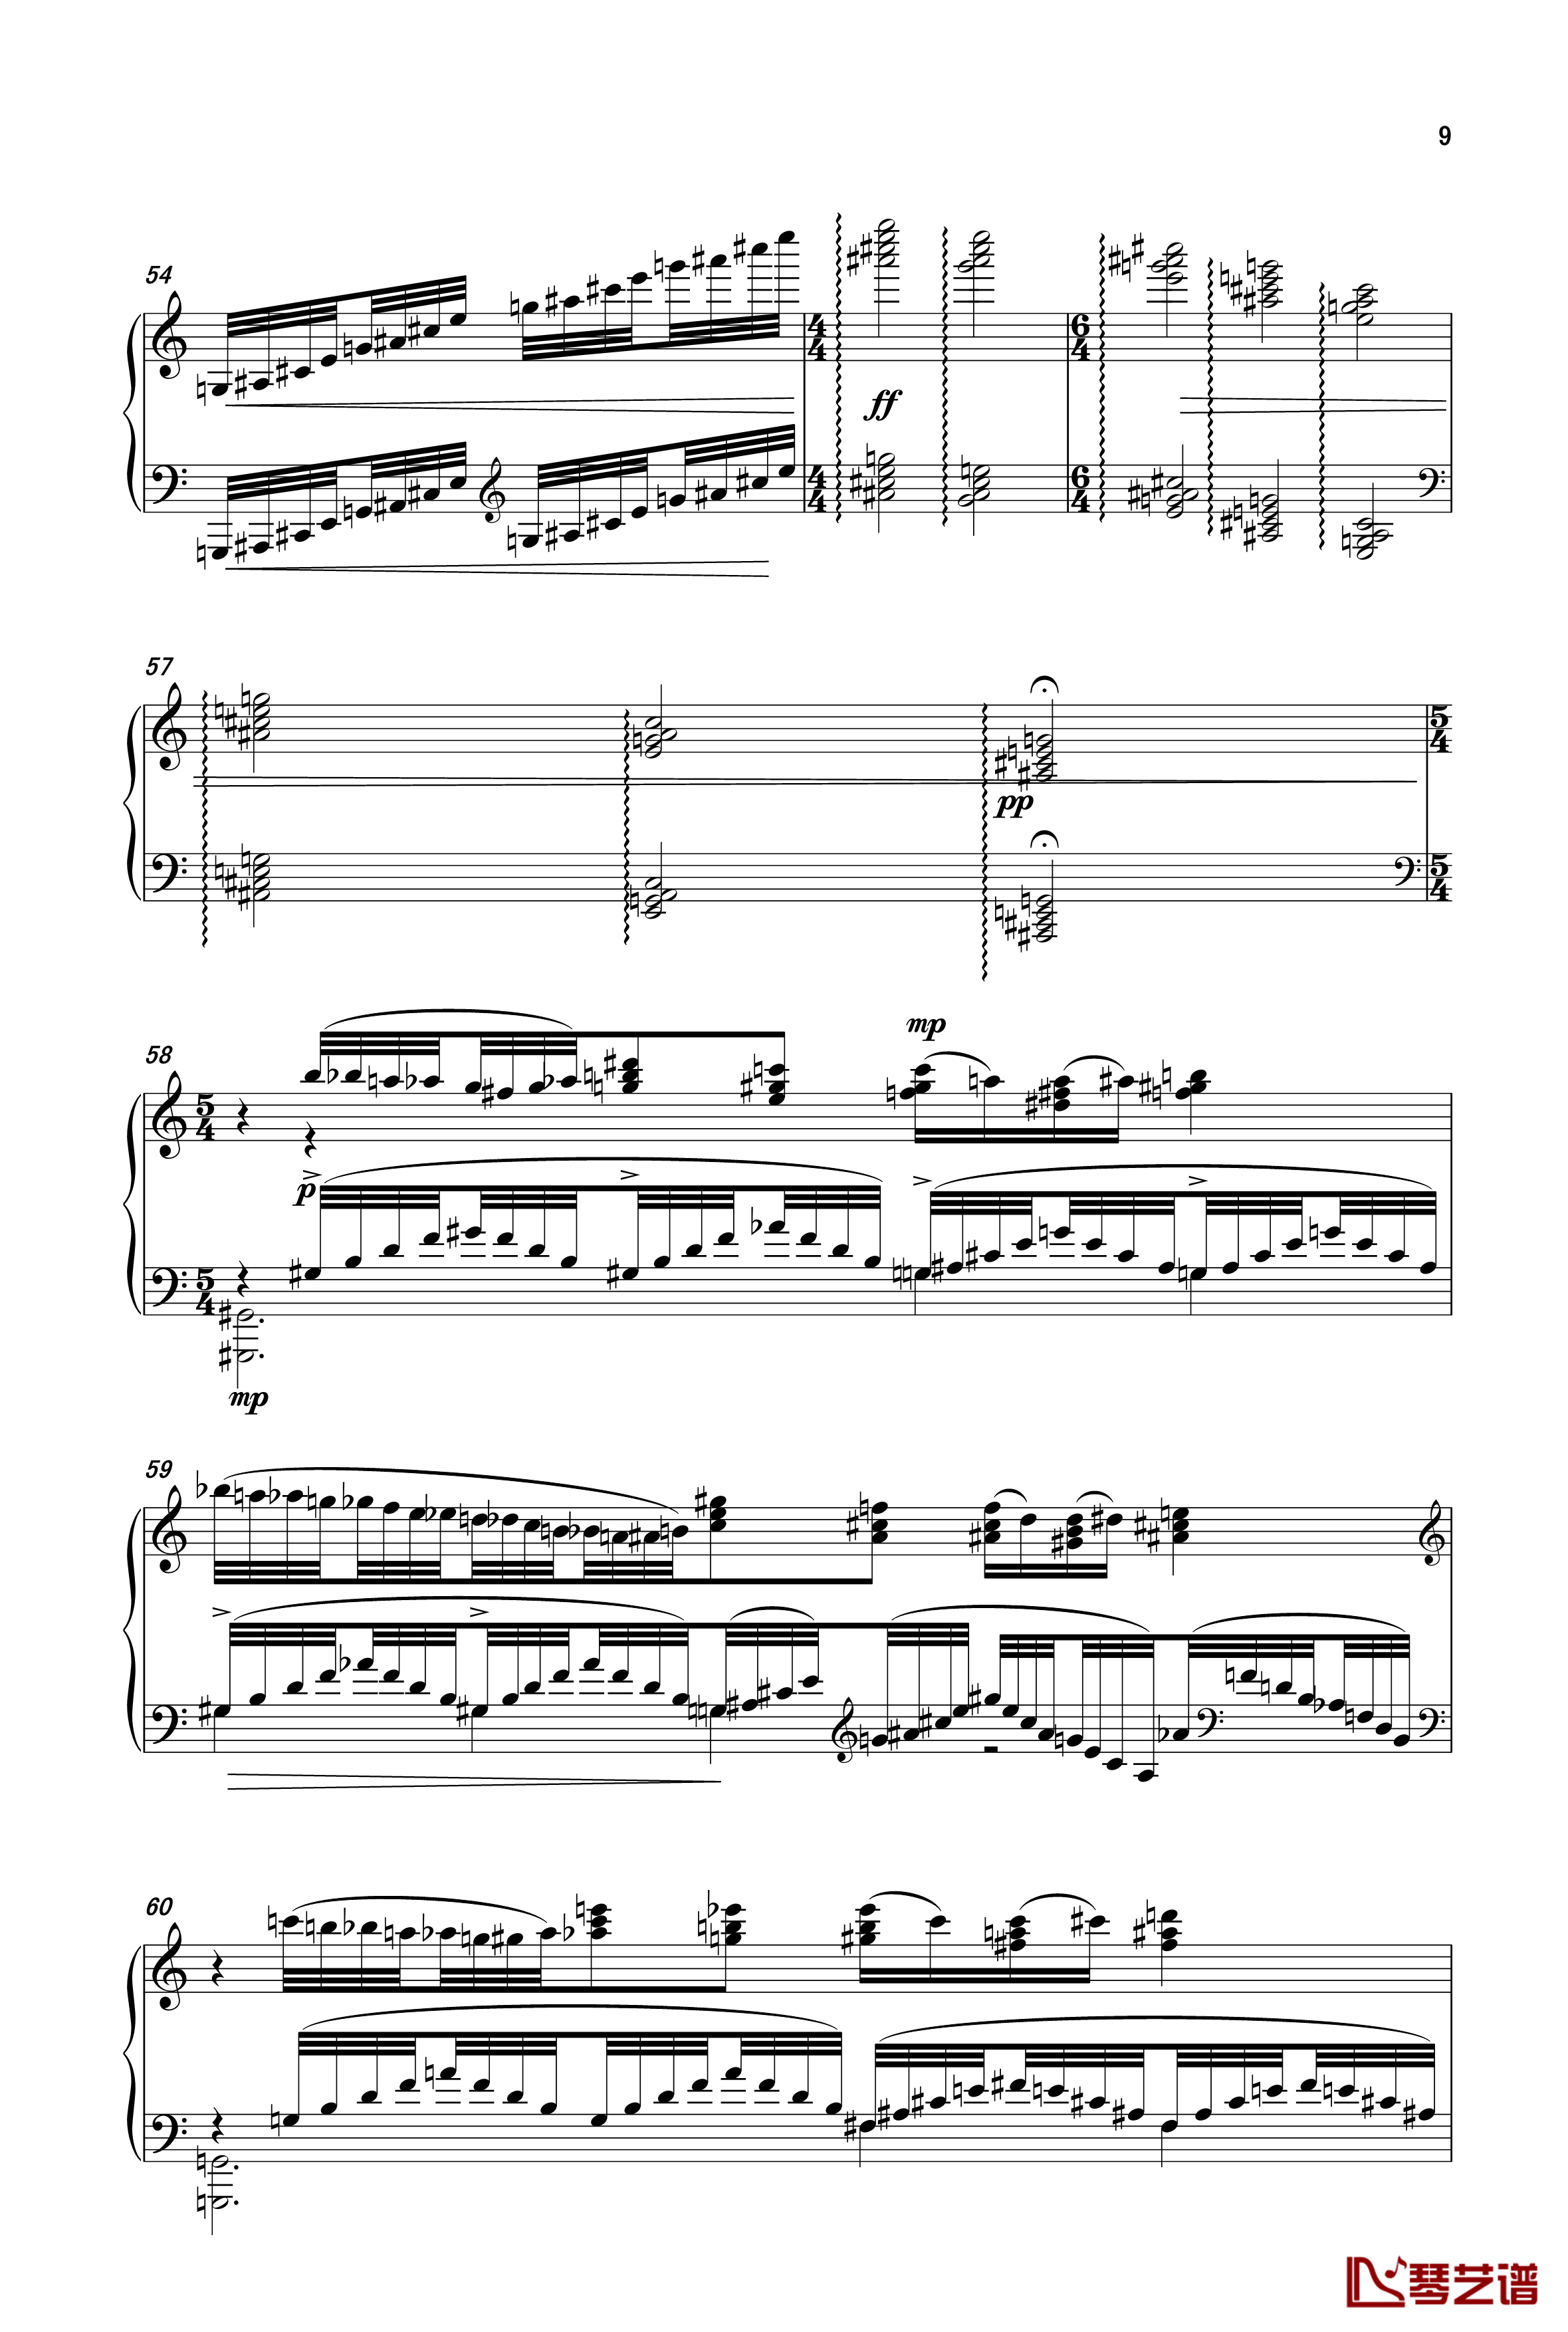 森林之夜钢琴谱-曲乐曲乐乐9